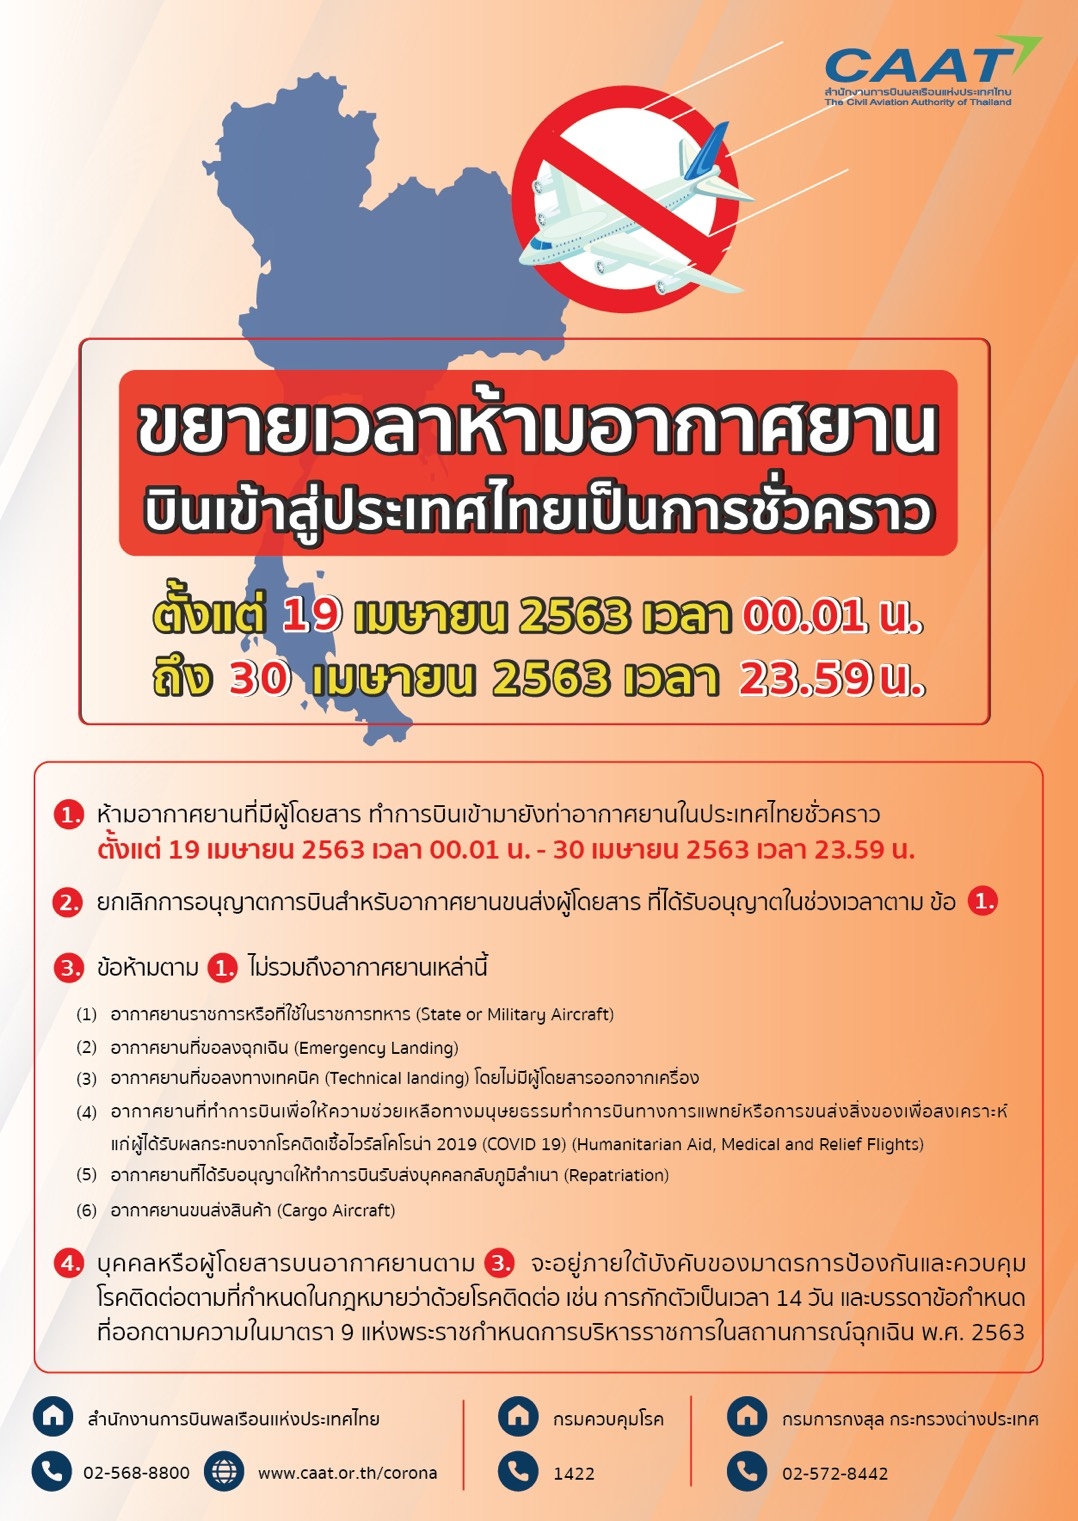 杜阿拉海运费泰国延长禁止所有国家客运航班入境措施至4月30日